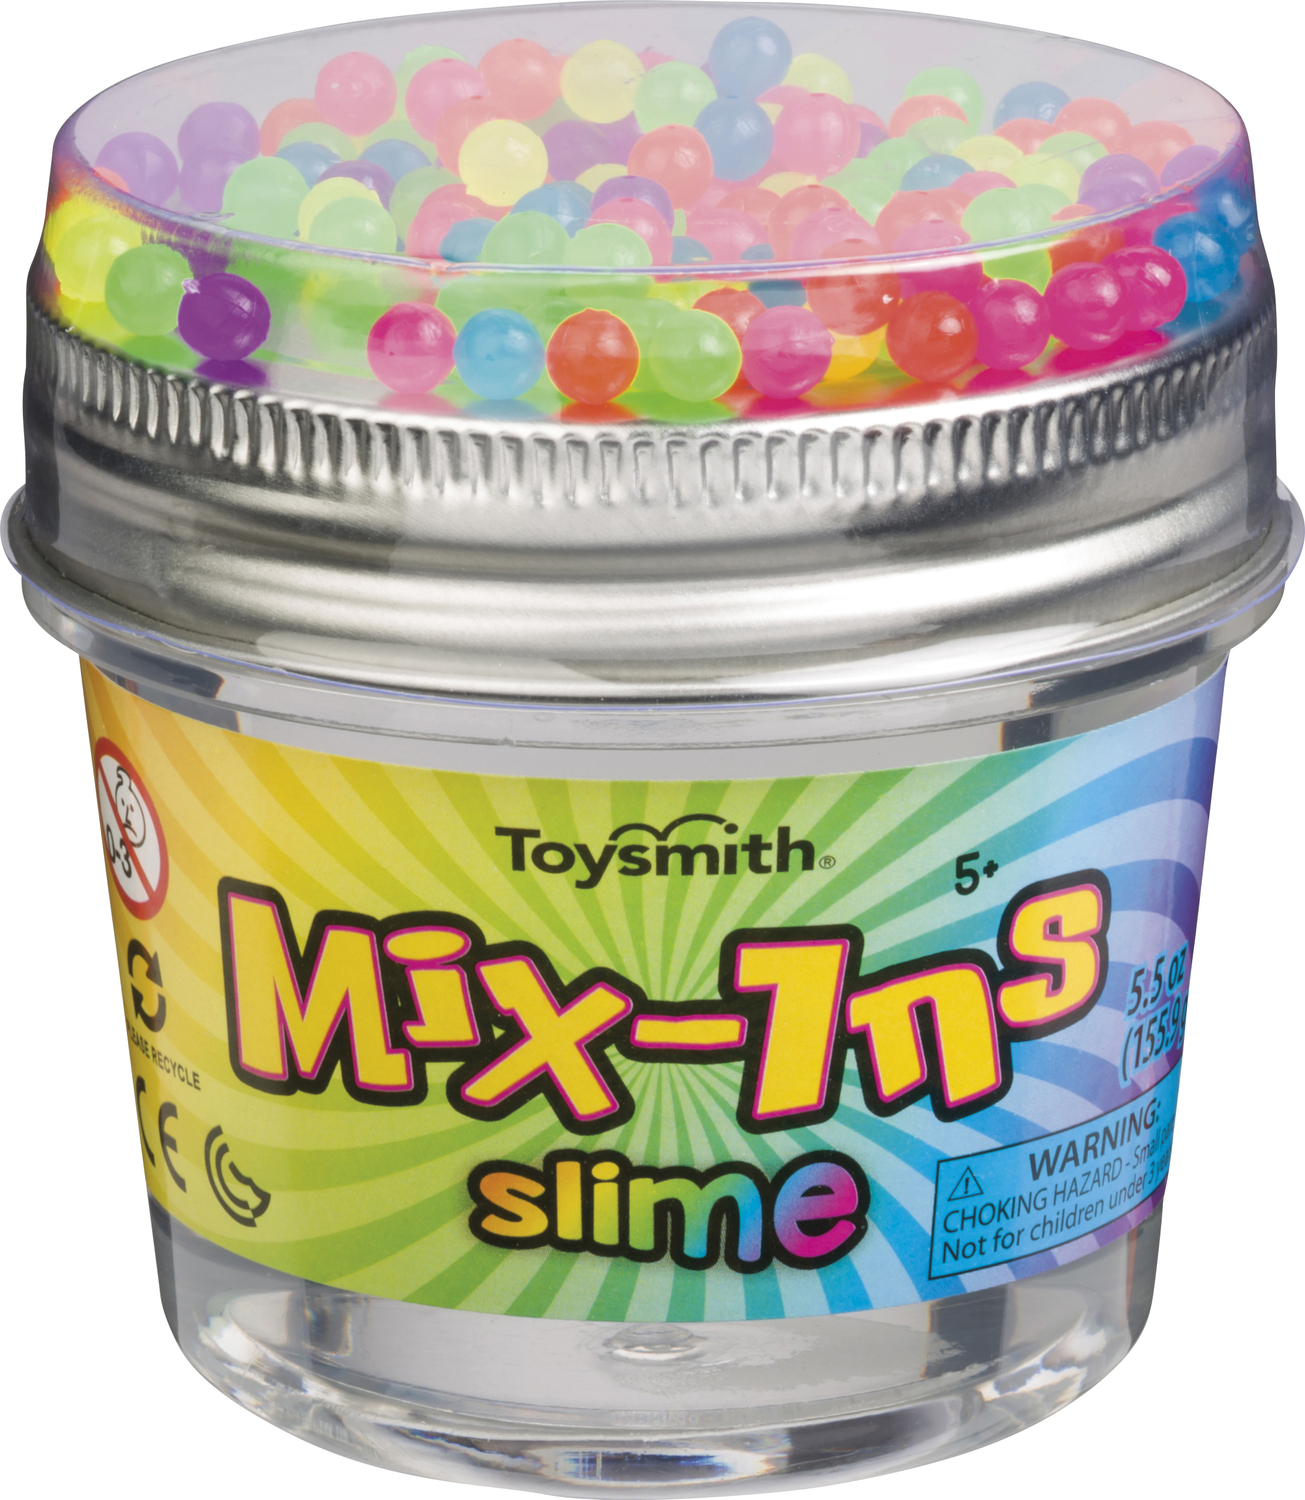 Toysmith Mix-Ins Slime Asst